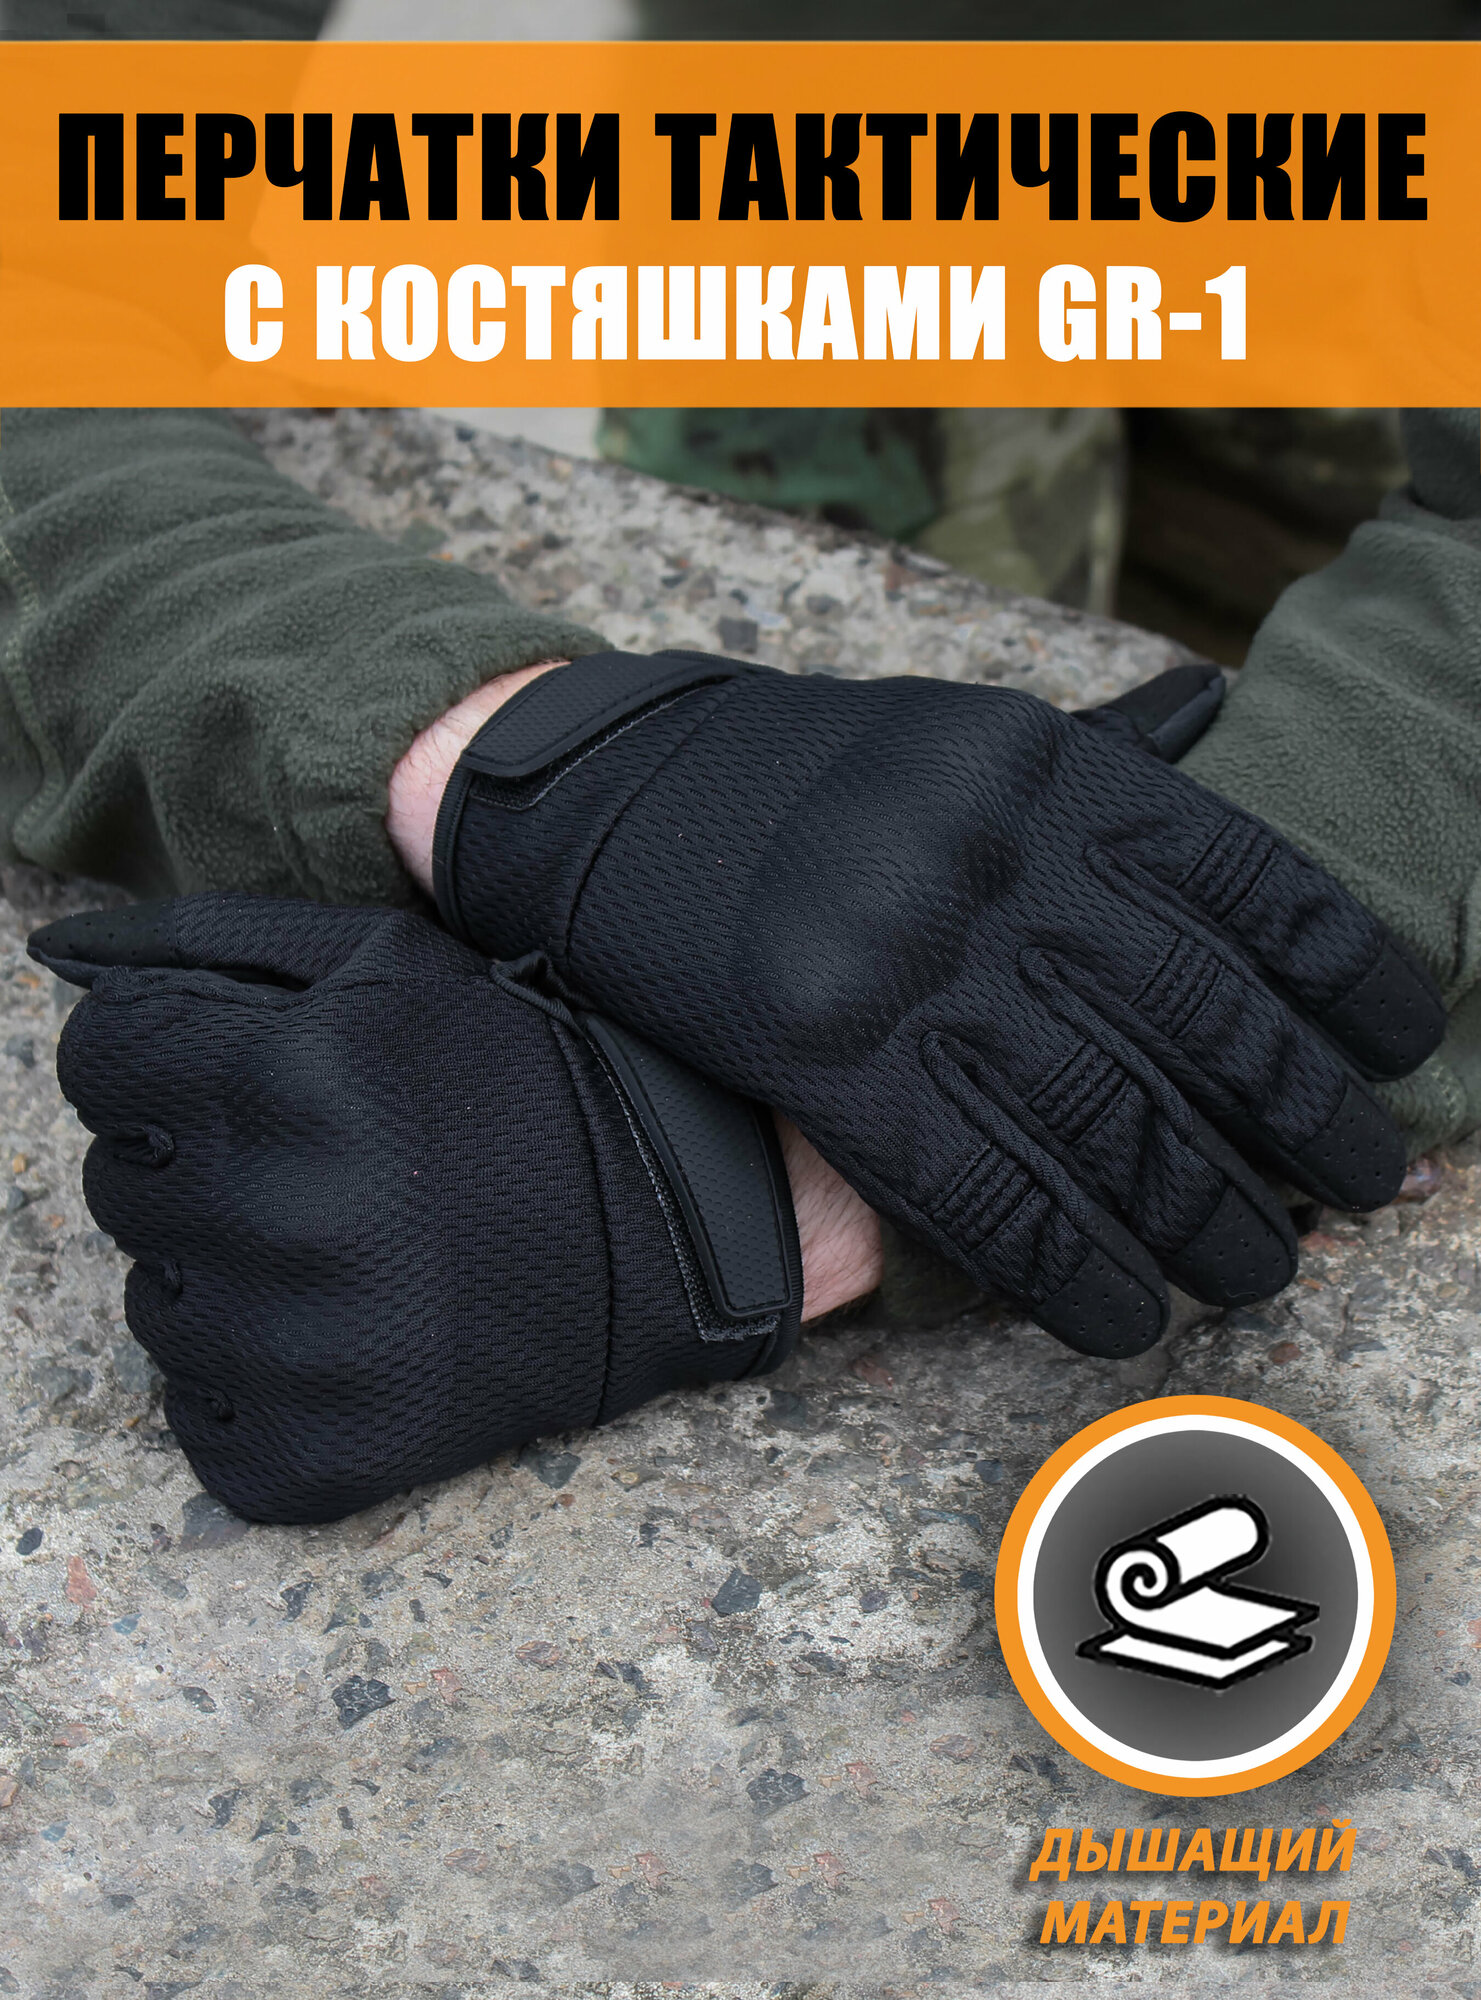 Перчатки тактические с защитной вставкой на костяшках GR-1, Цвет: Чёрный, Размер: L